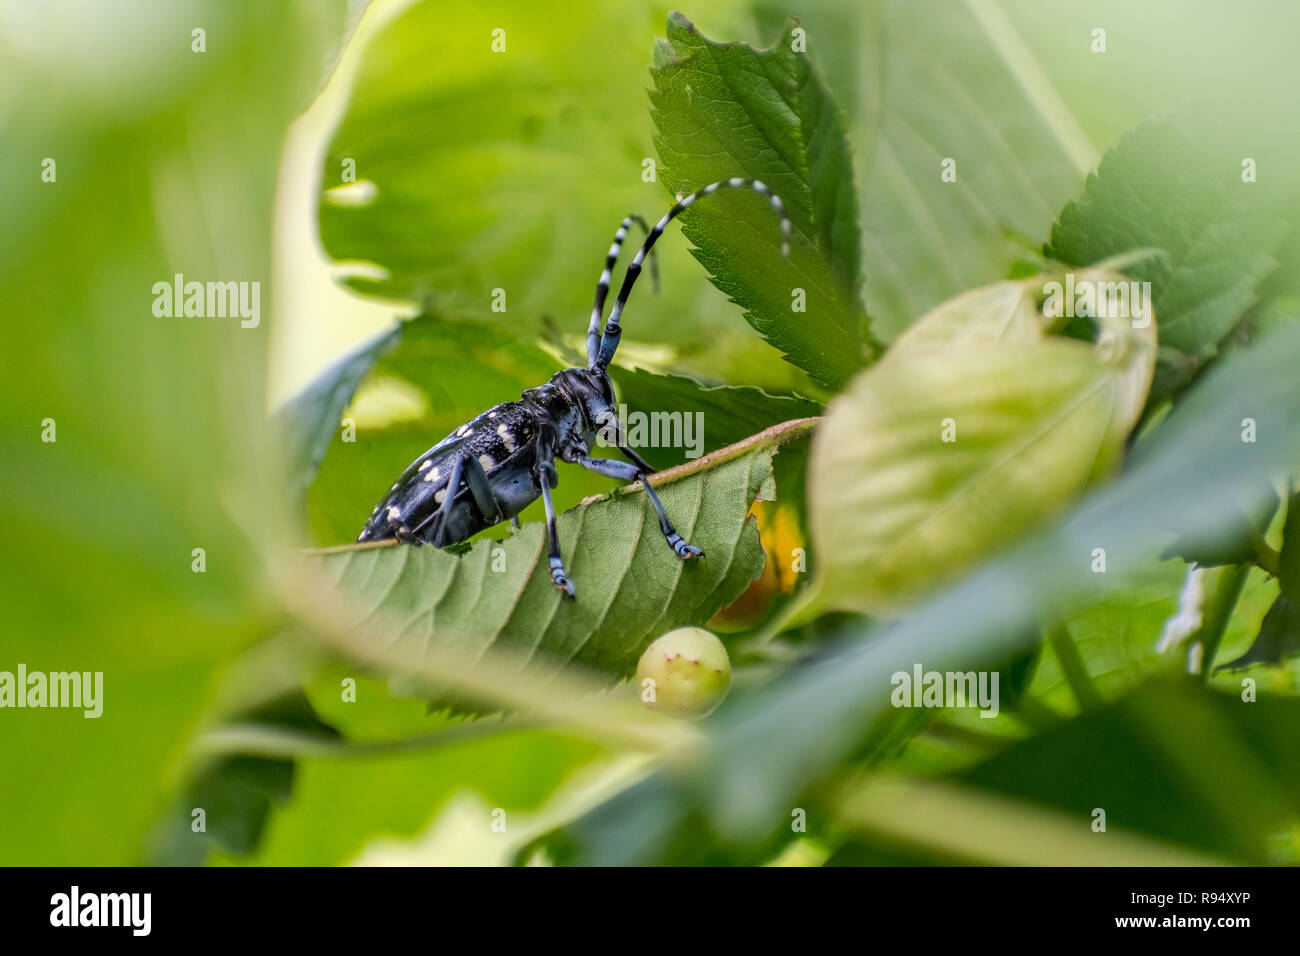 Asiatische Langhörnigen Käfer [Anoplophora glabripennis] Stockfoto